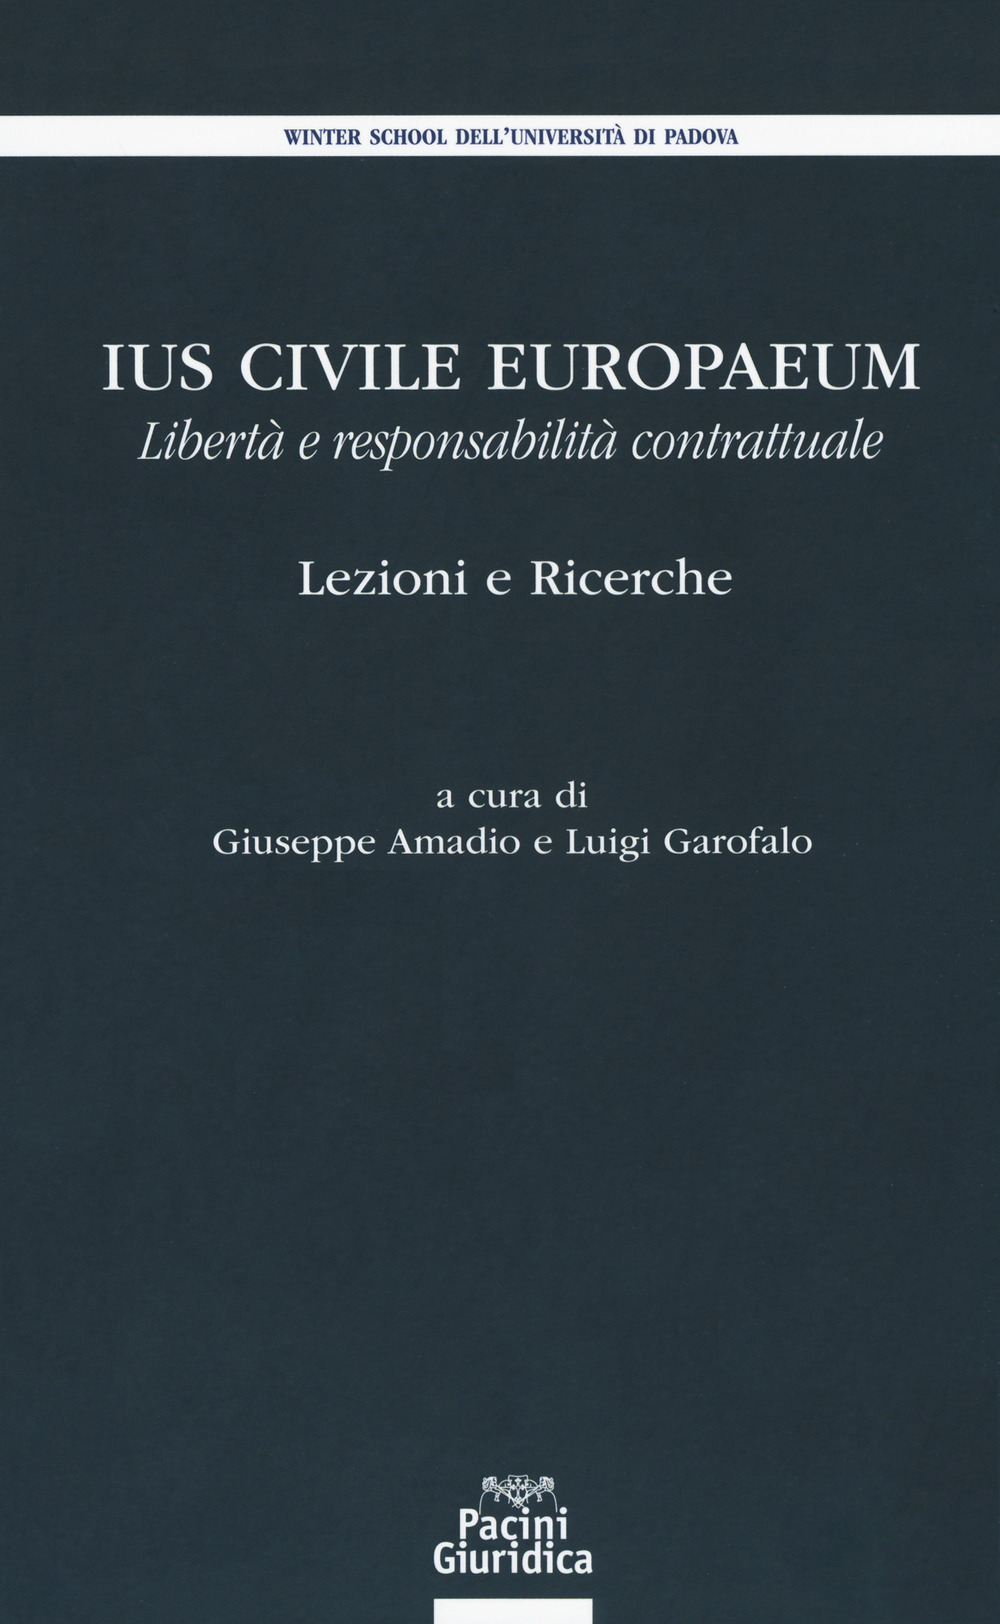 Ius civile europaeum. Libertà e responsabilità contrattuale. Lezioni e ricerche